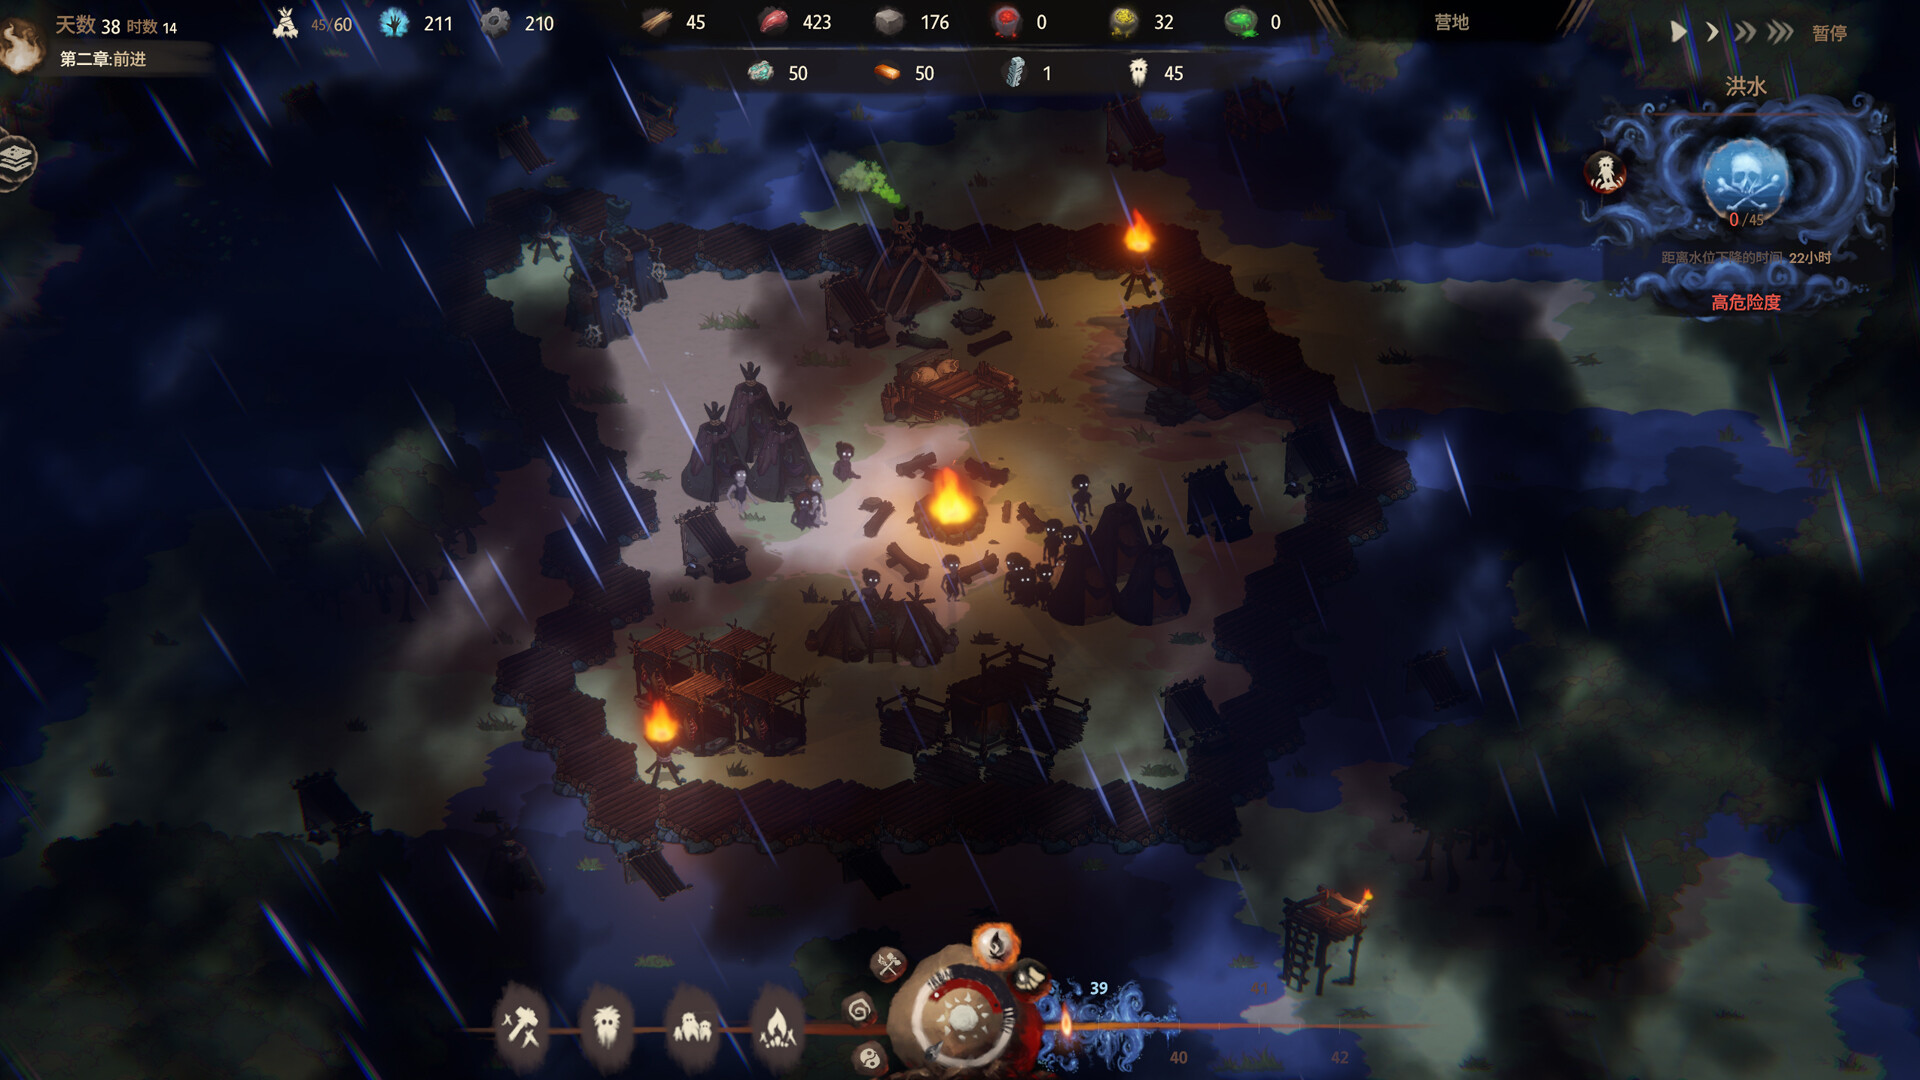 克系生存建造游戏《末夜部落》现已在Steam平台正式推出 获多半好评